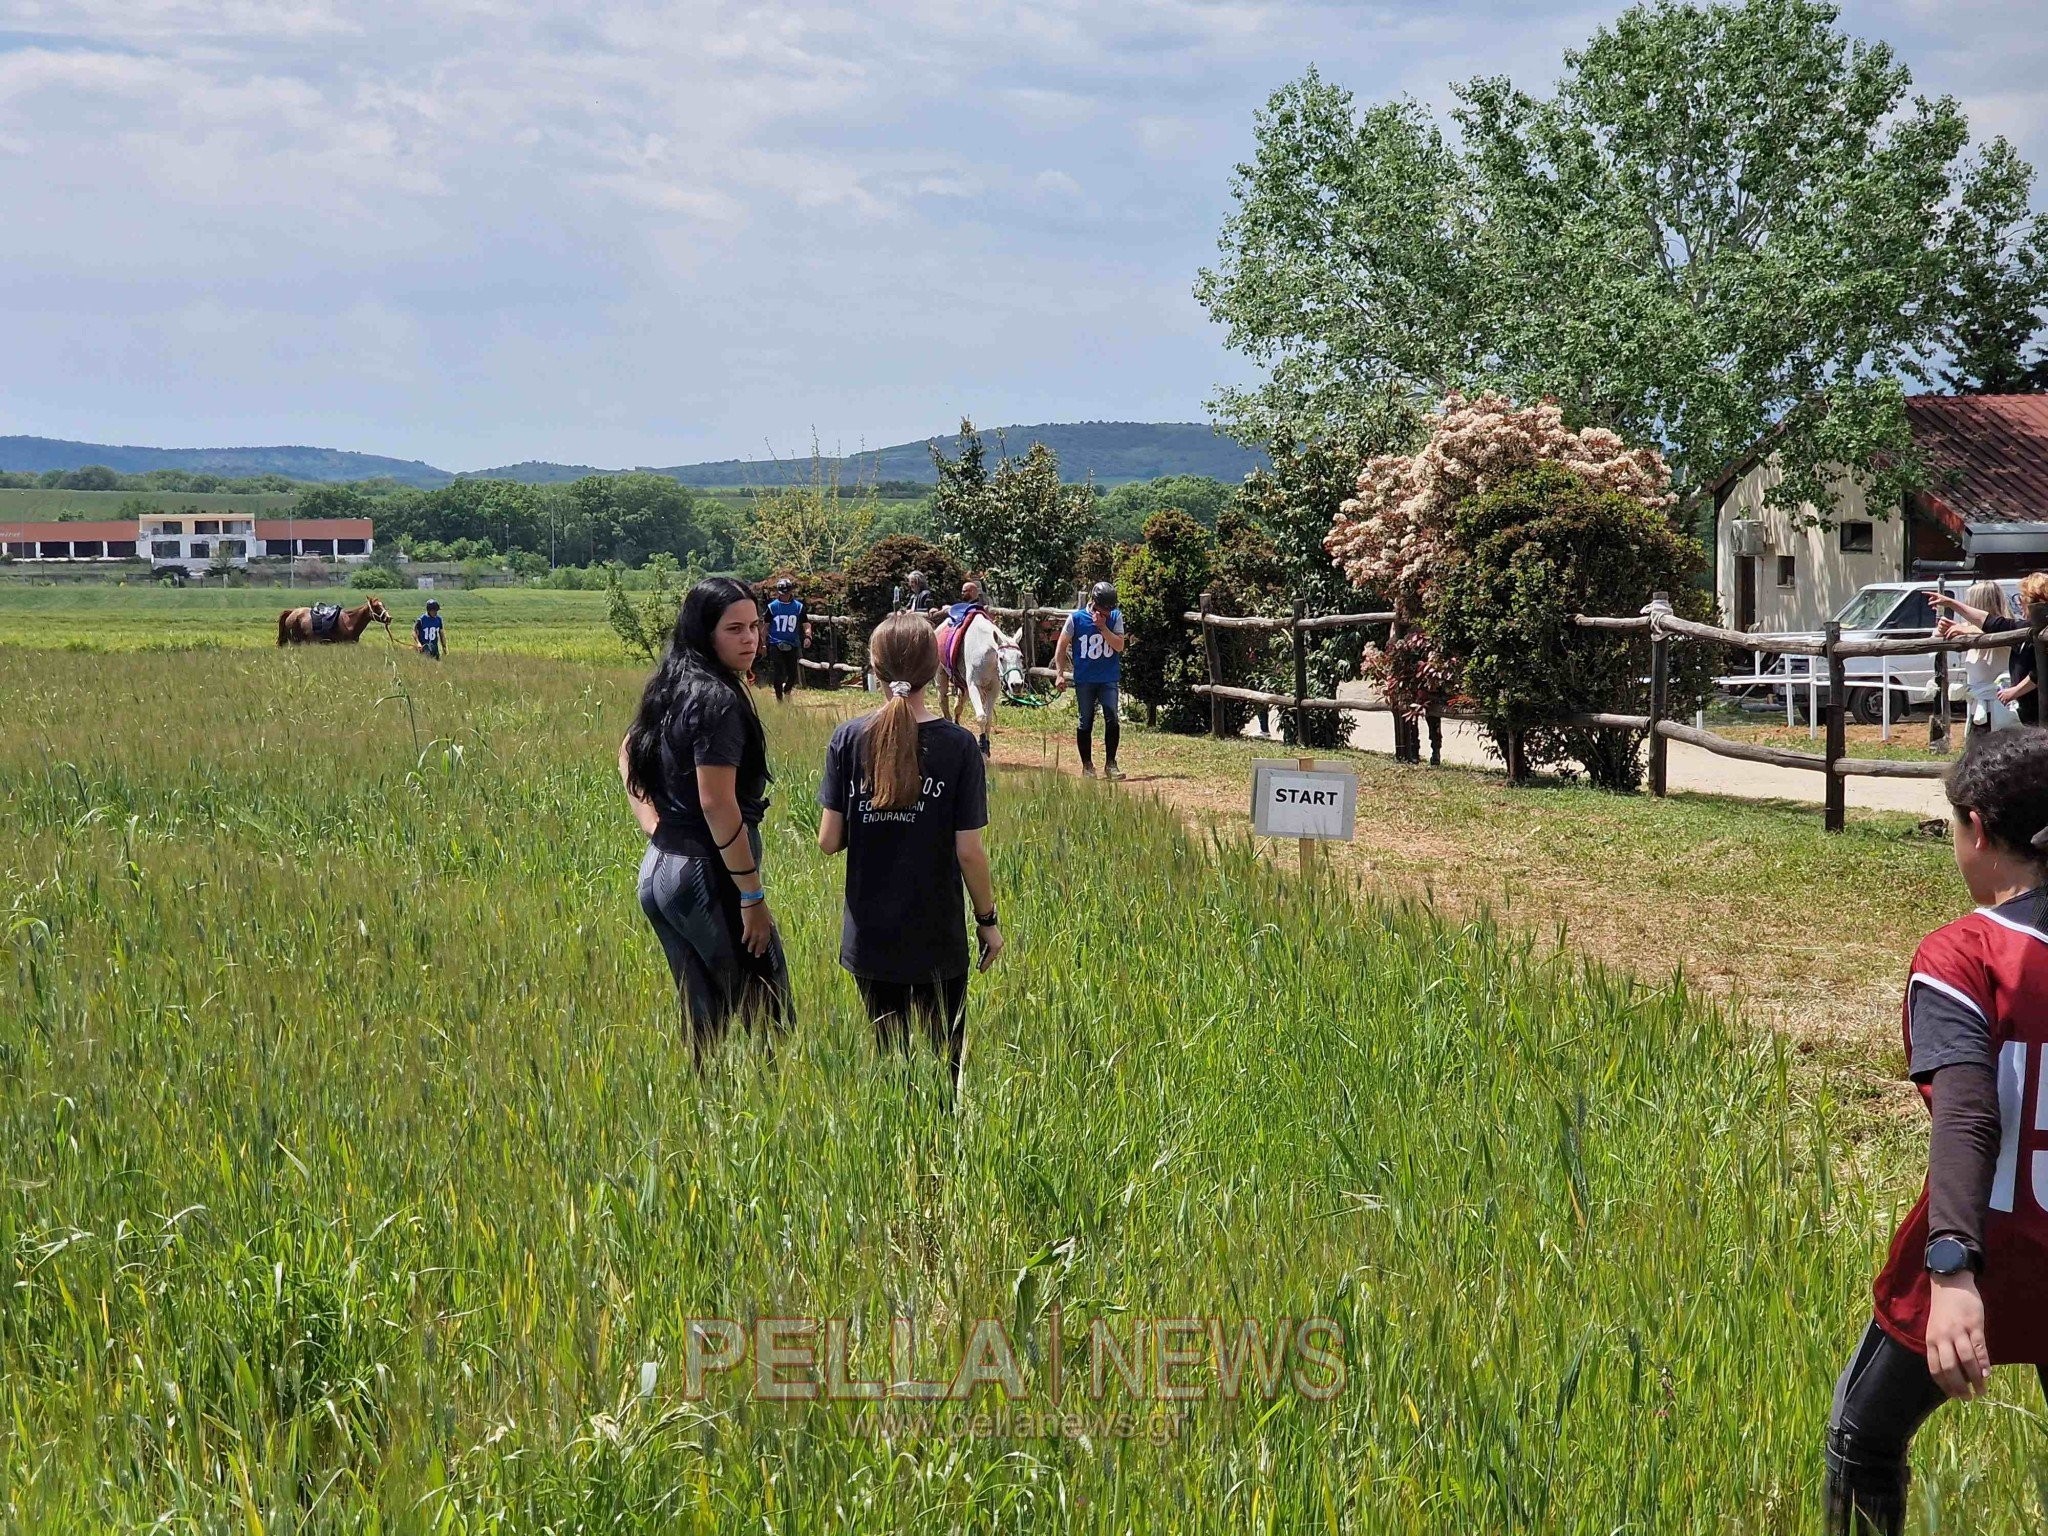 Οι αγώνες Ιππικής Αντοχής στο Ράντζο Κιλκίς μέσα από την κάμερα του pellanews.gr